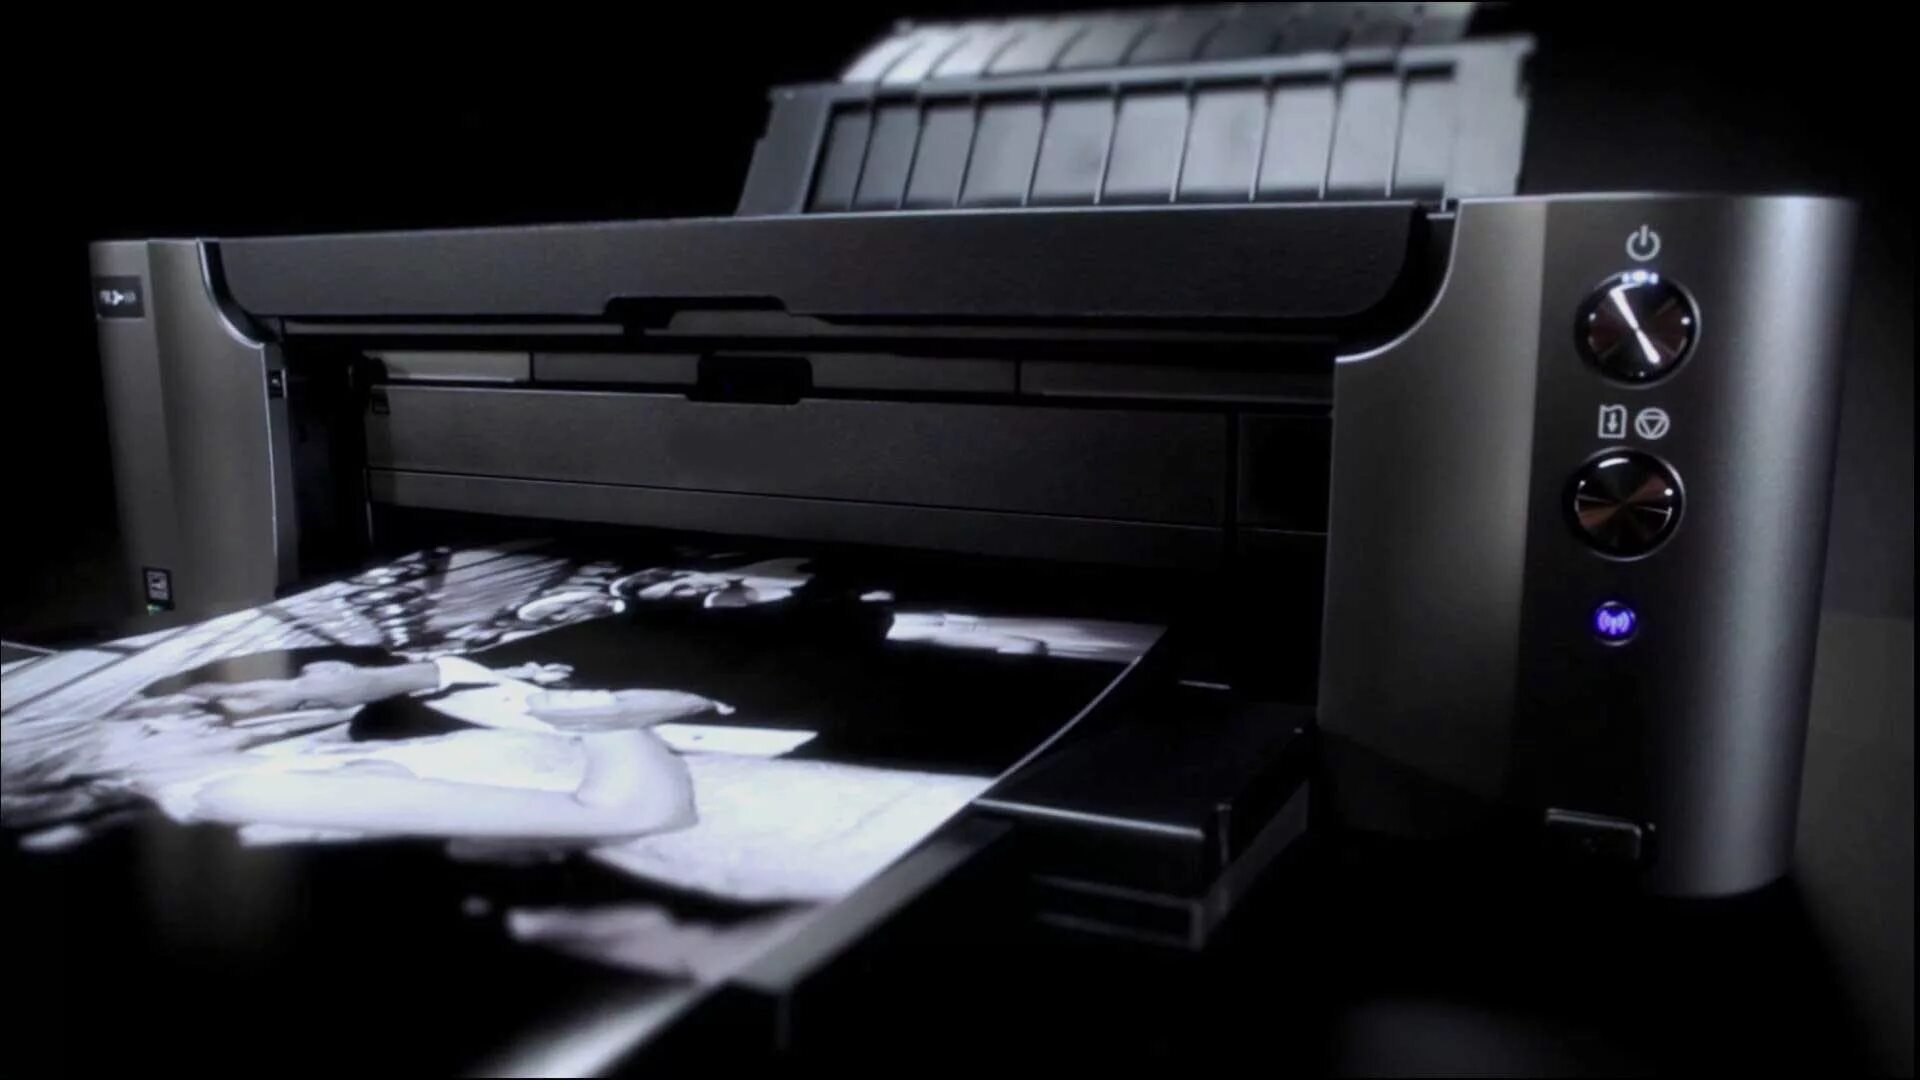 Принтер Canon серый. Canon Inc принтер. Принтер Кэнон лазерный серый. Принтер на черном фоне